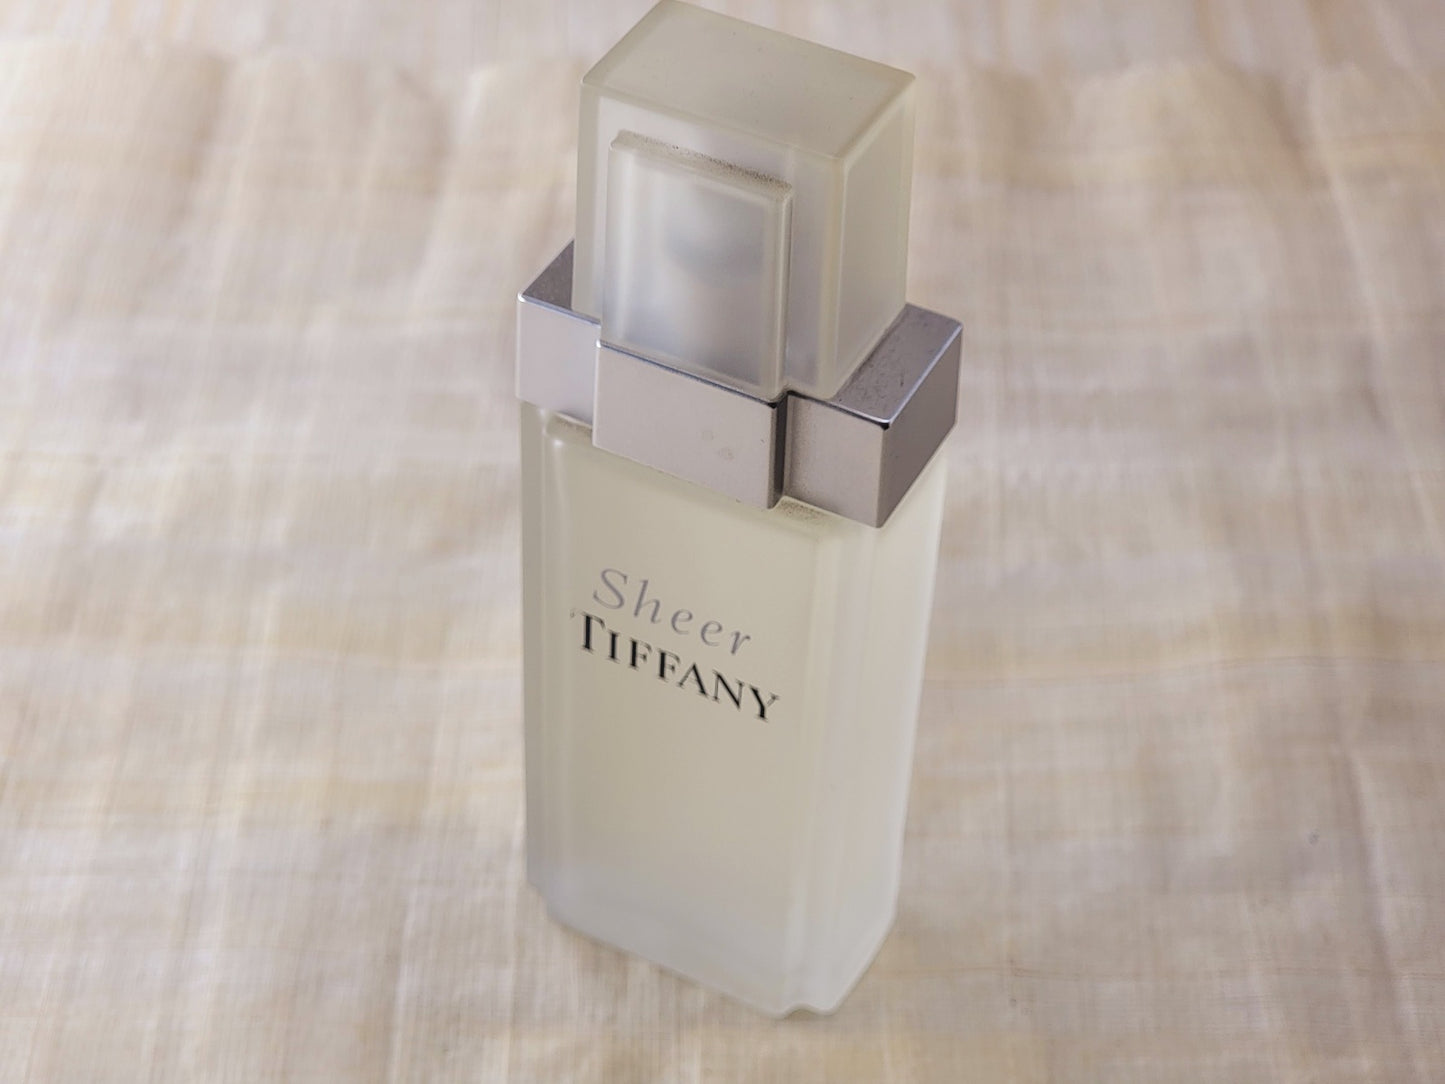 Sheer Tiffany for women EDP Spray 50 ml 1.7 oz, Vintage, Rare, No Box